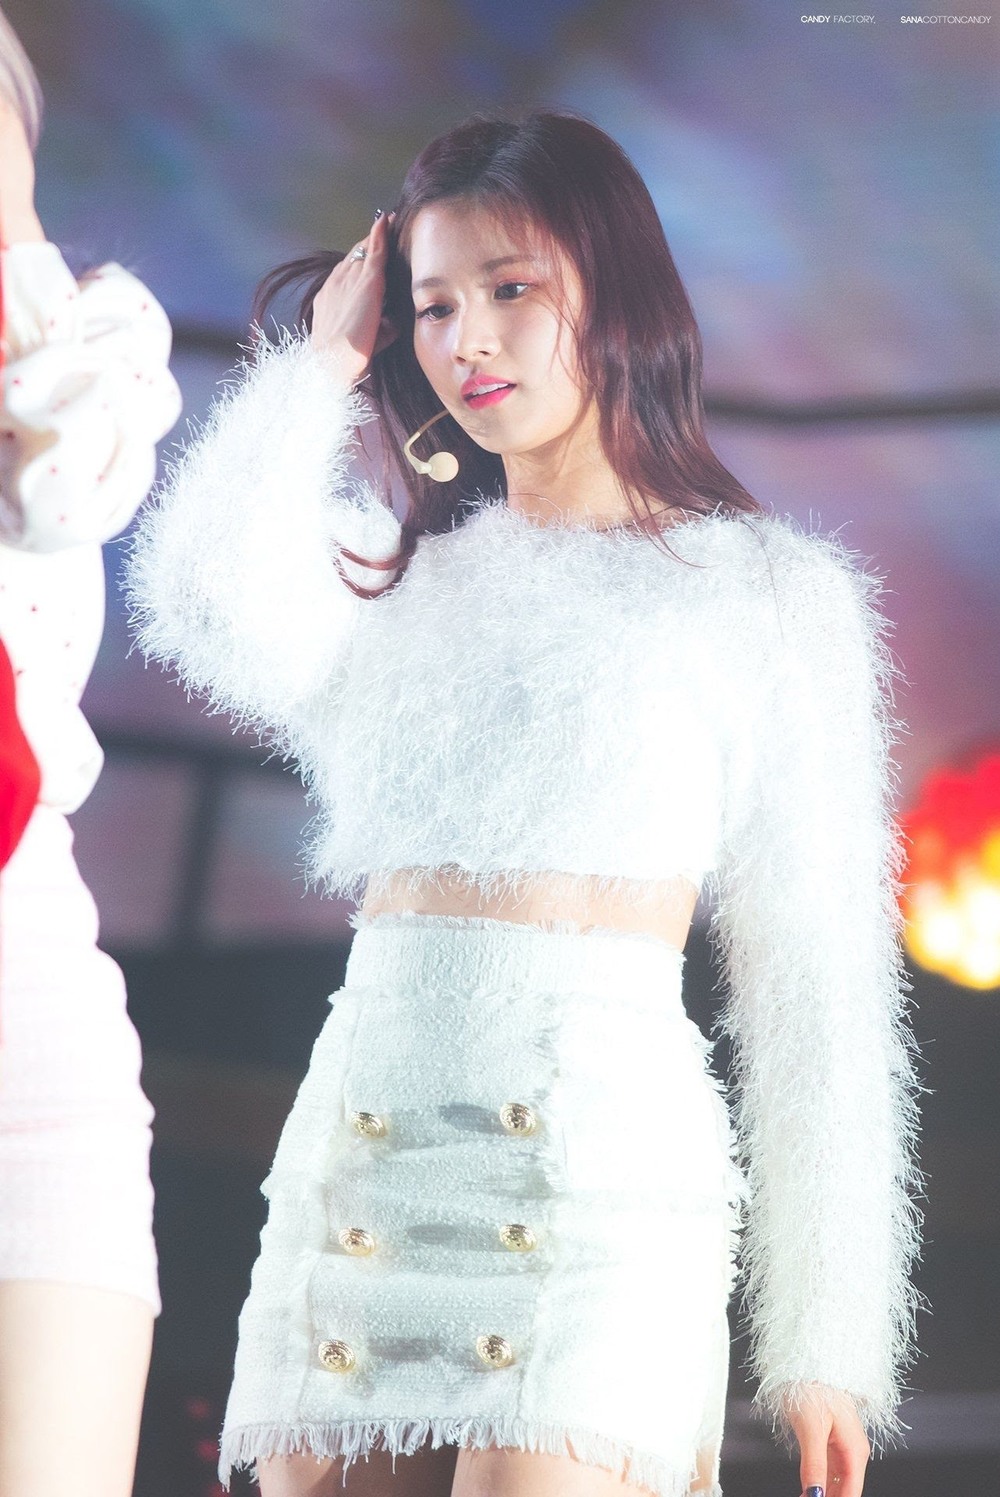  
Khoảnh khắc "thiên thần" Sana tỏa sáng trên sân khấu (Ảnh Naver)